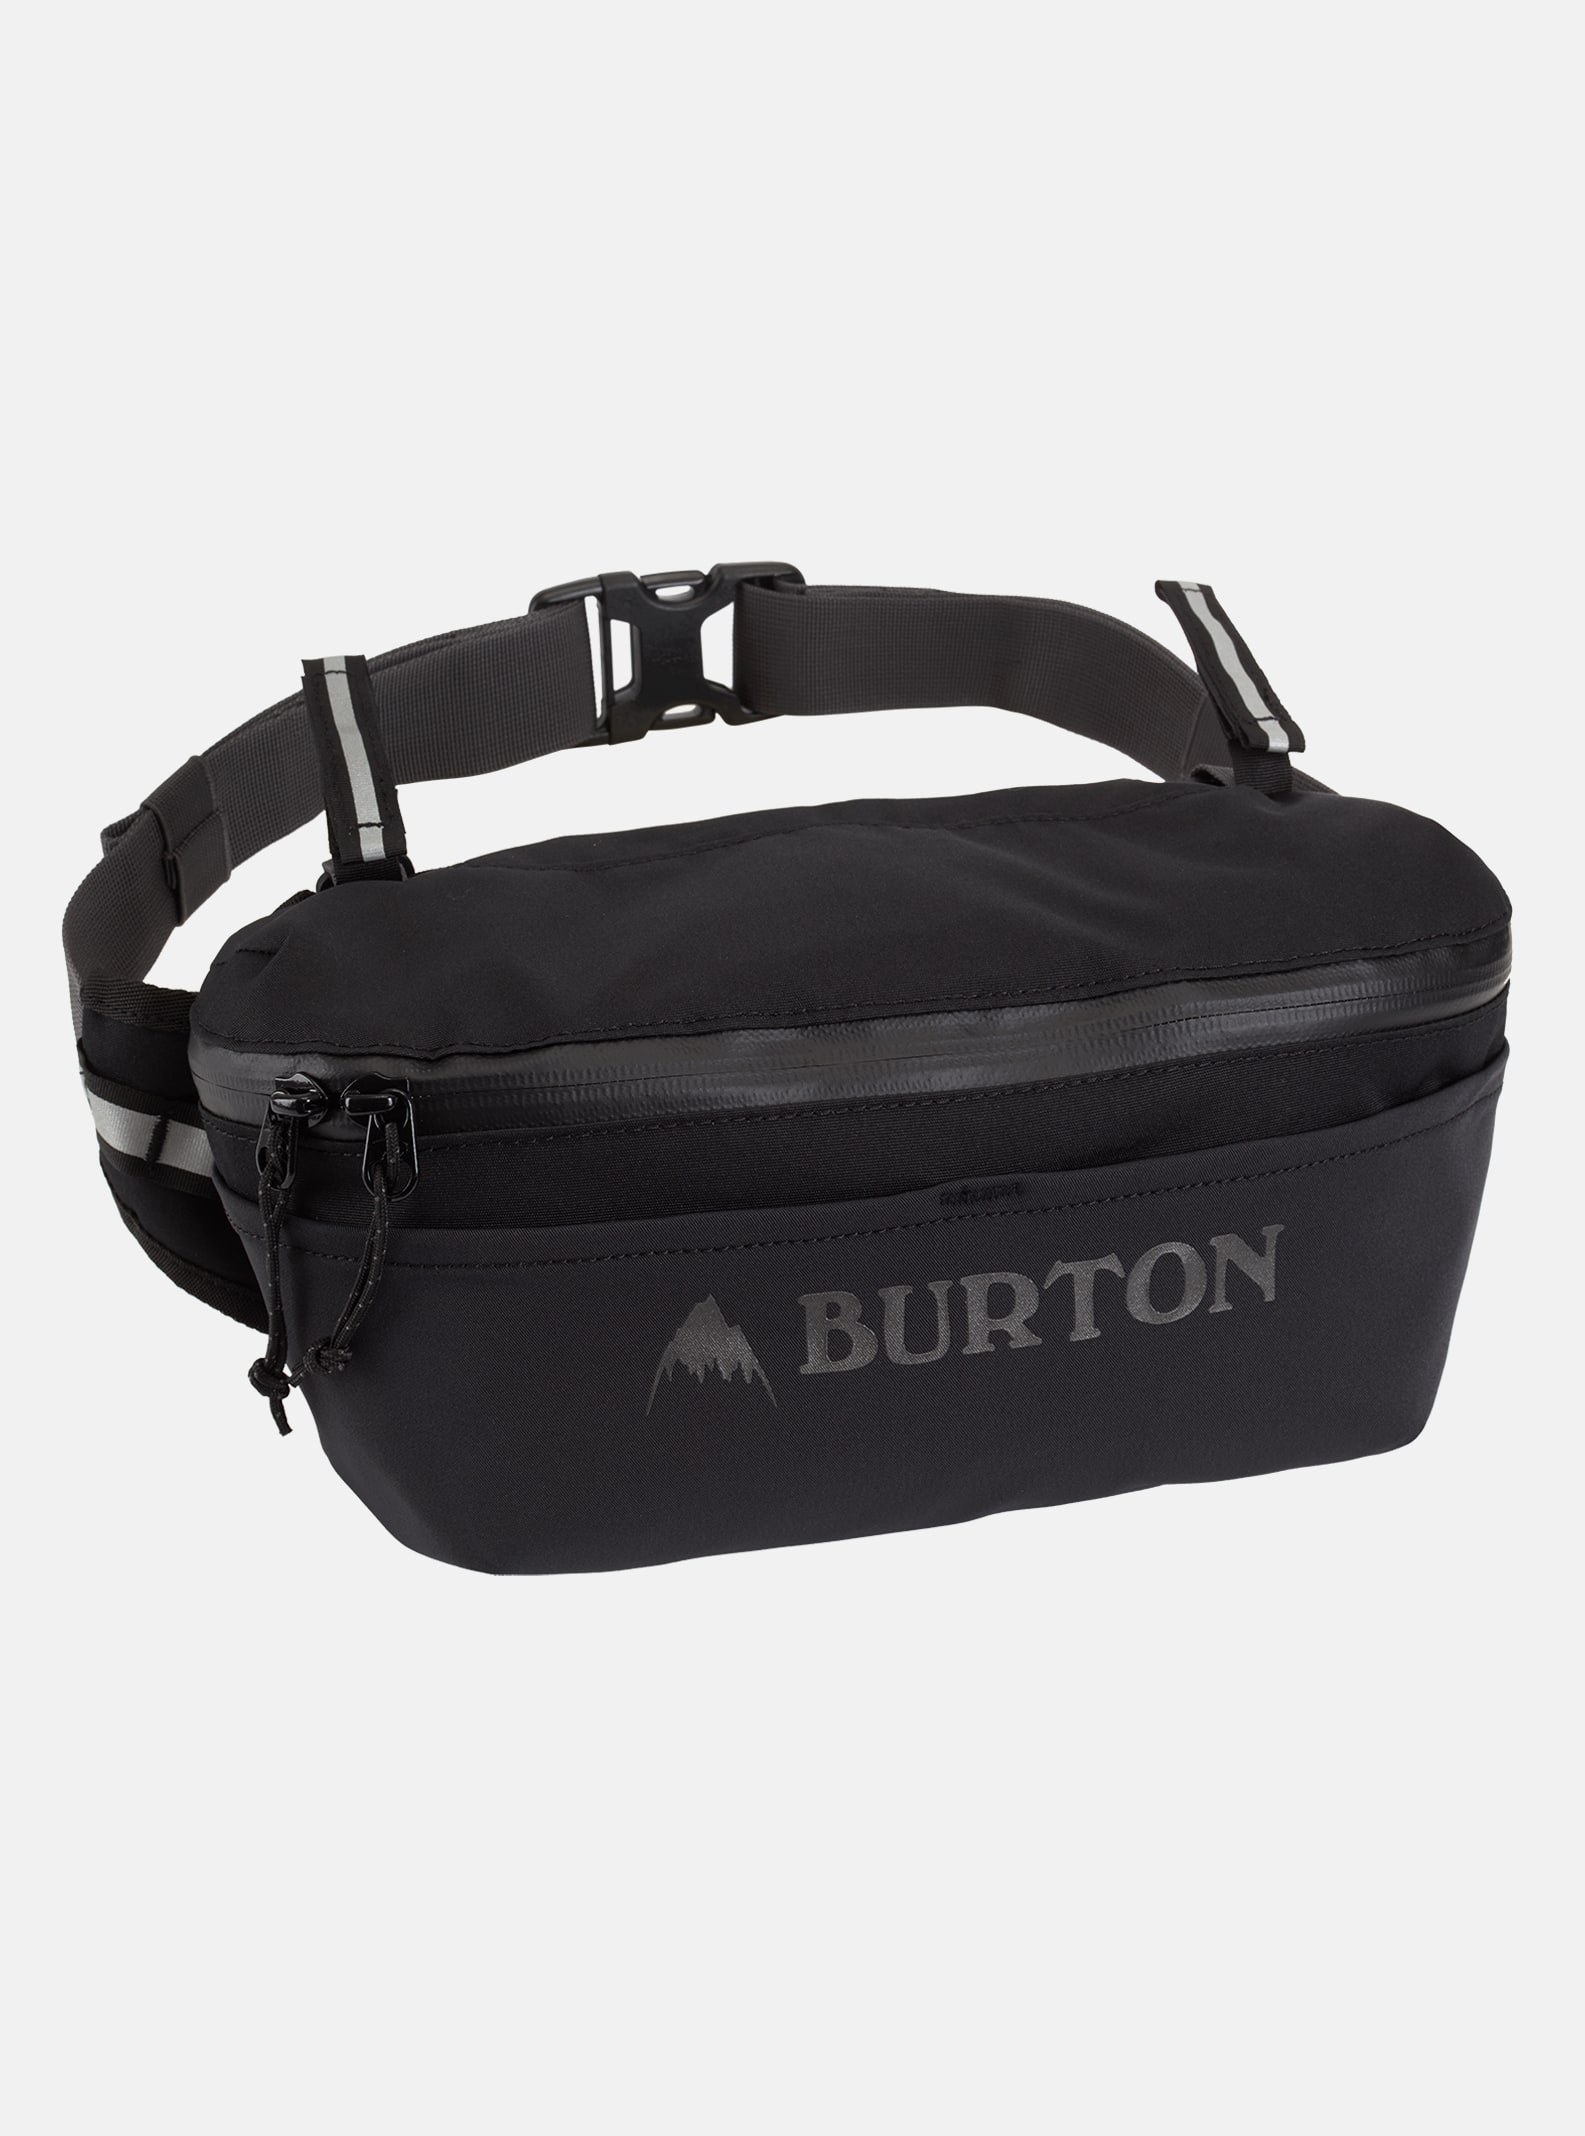 Burton - Trousse de toilette Multipath 5 L, Black Cordura